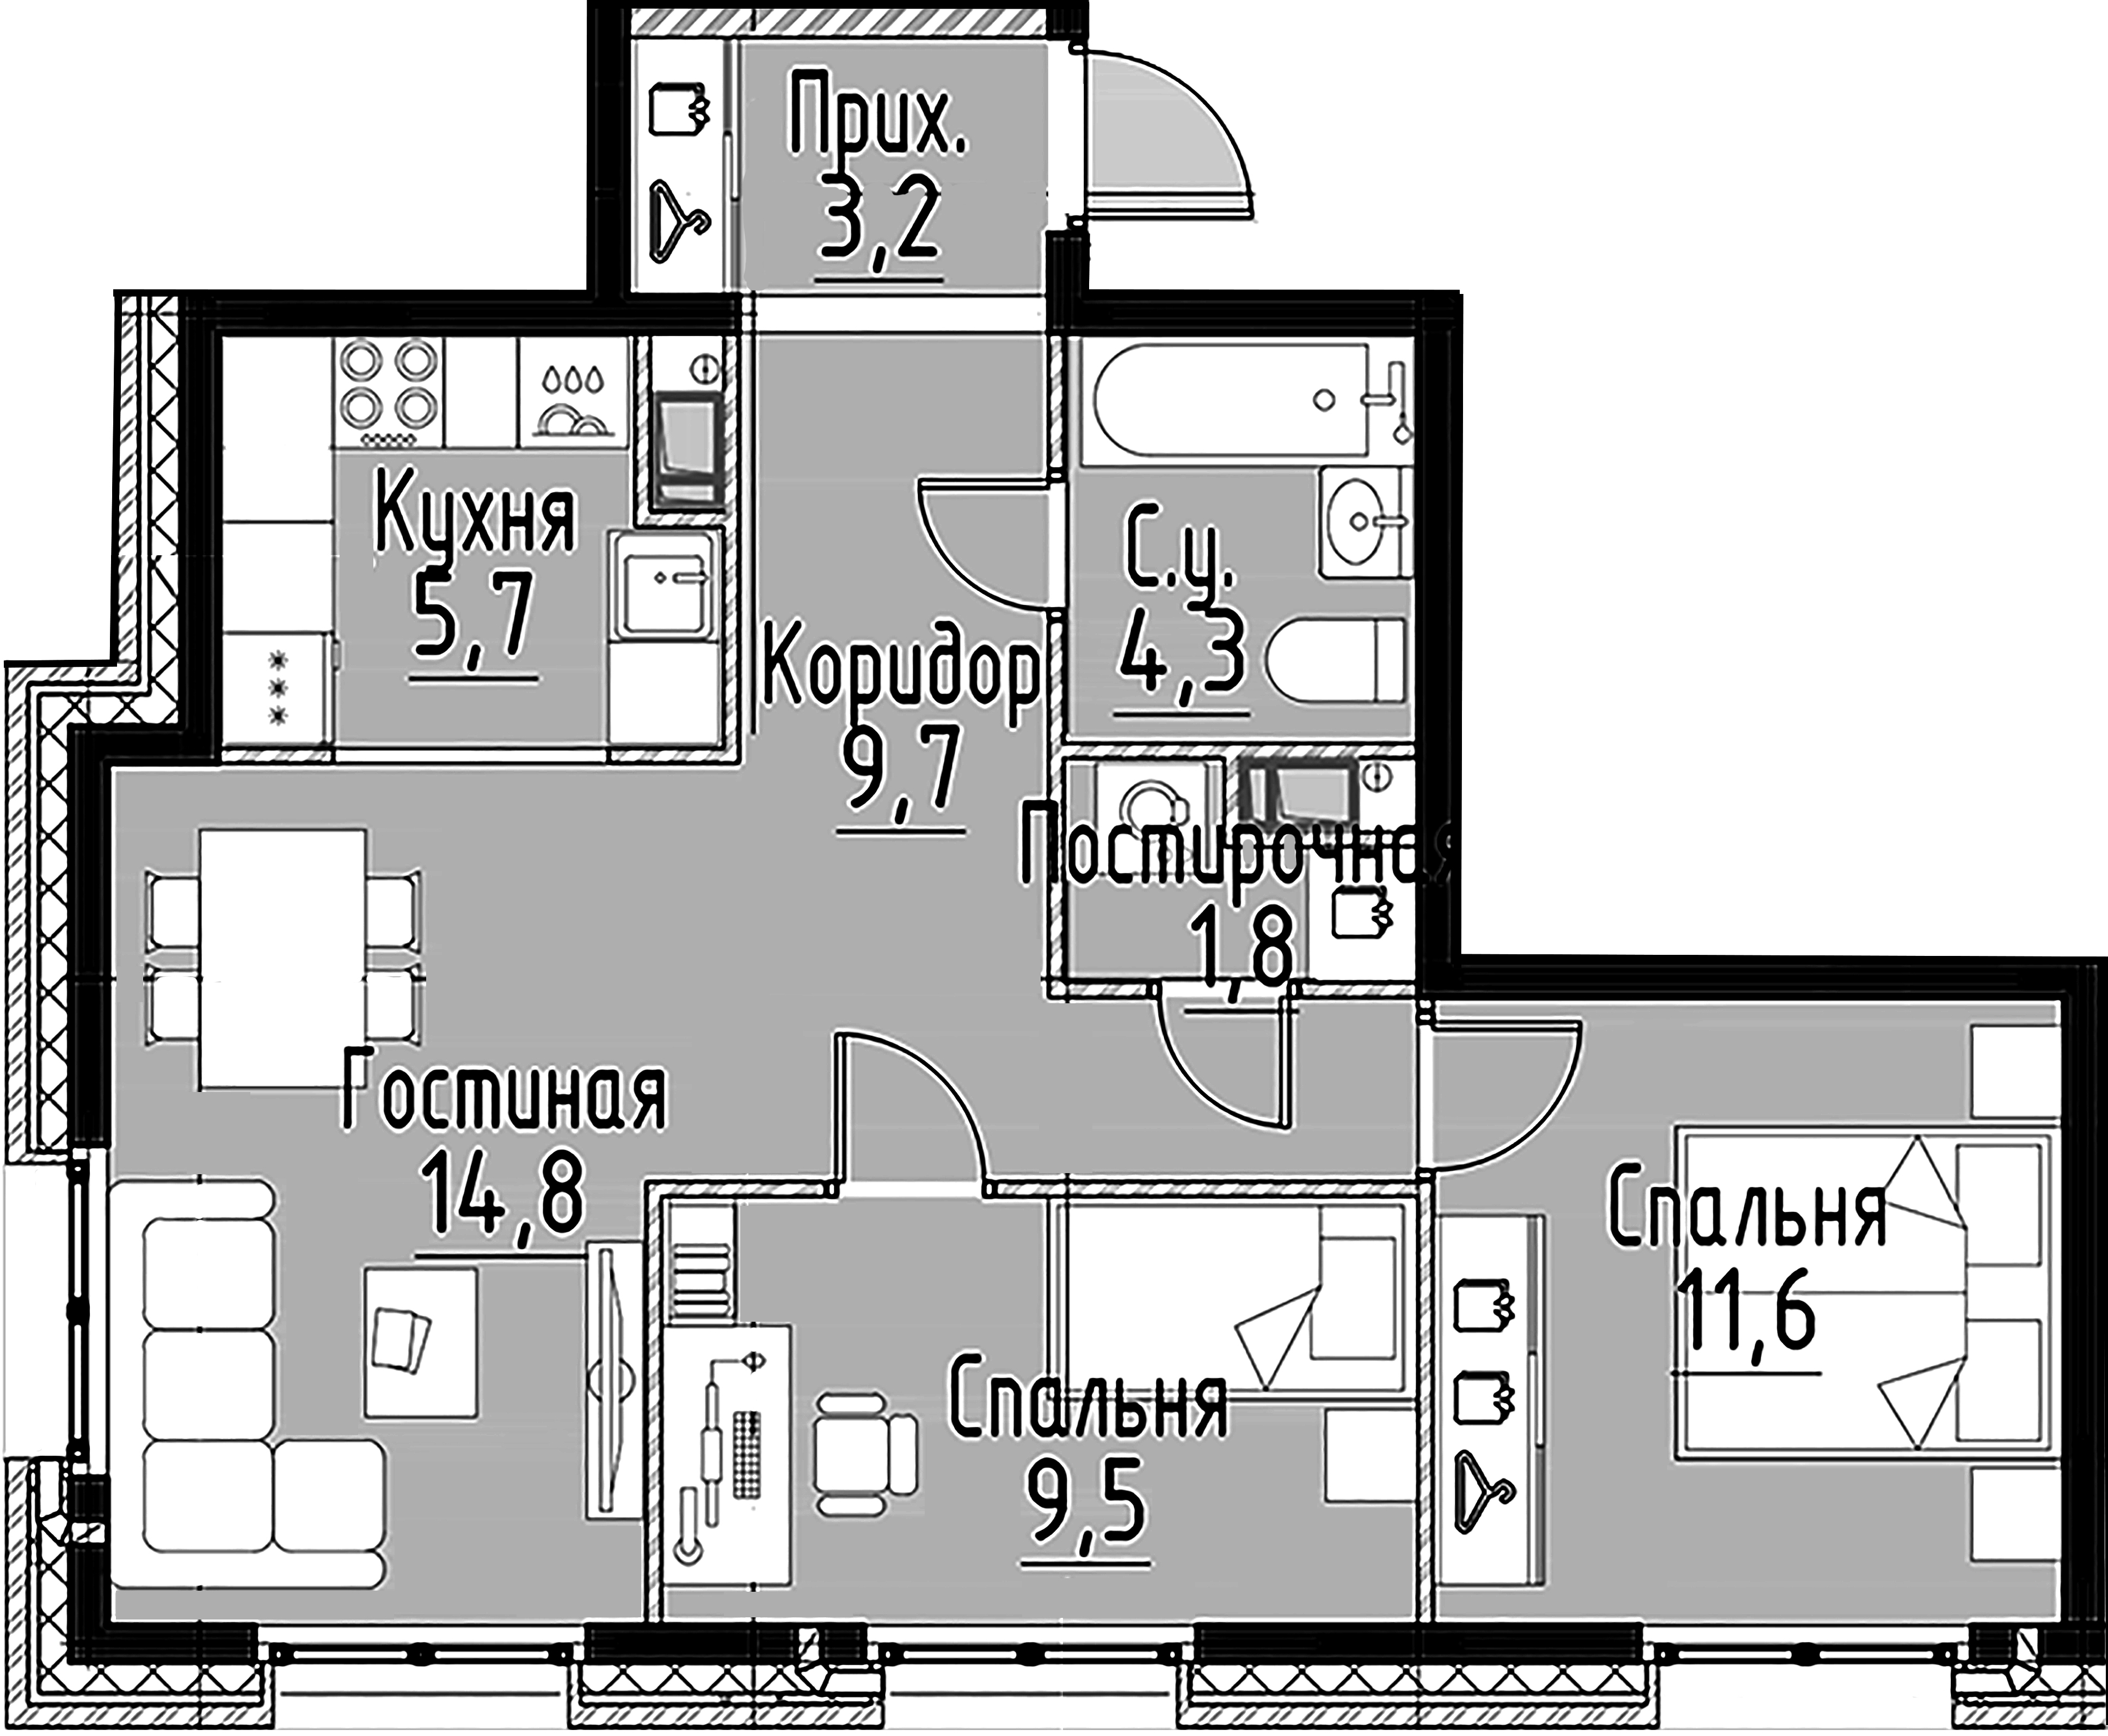 2-комнатная квартира  №109 в Моисеенко, 10: 60.6 м², этаж 3 - купить в Санкт-Петербурге